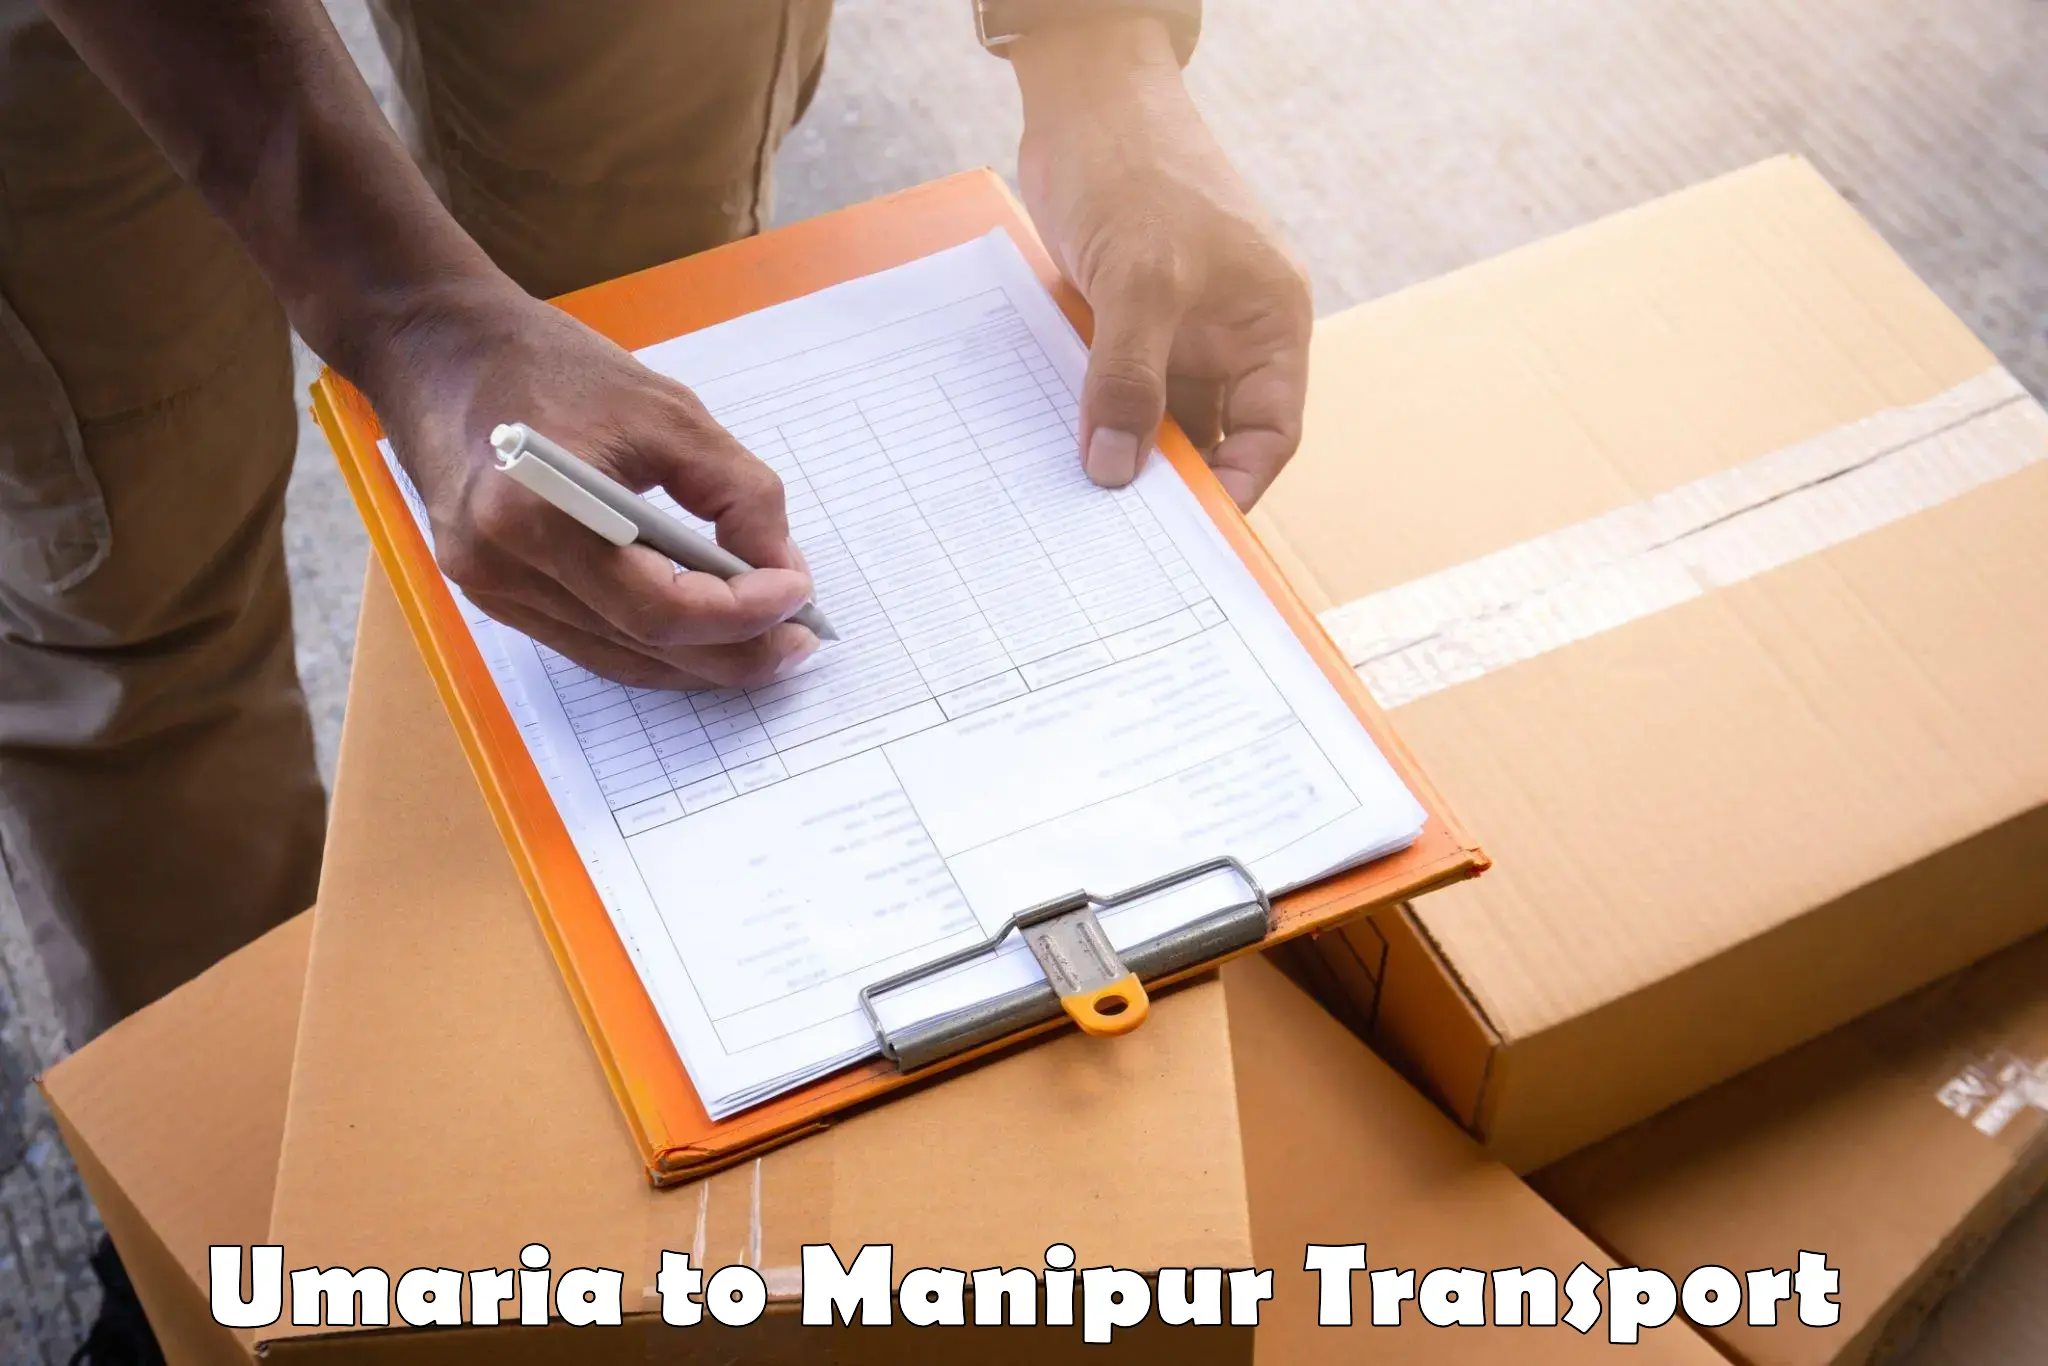 Cargo transportation services Umaria to Moirang